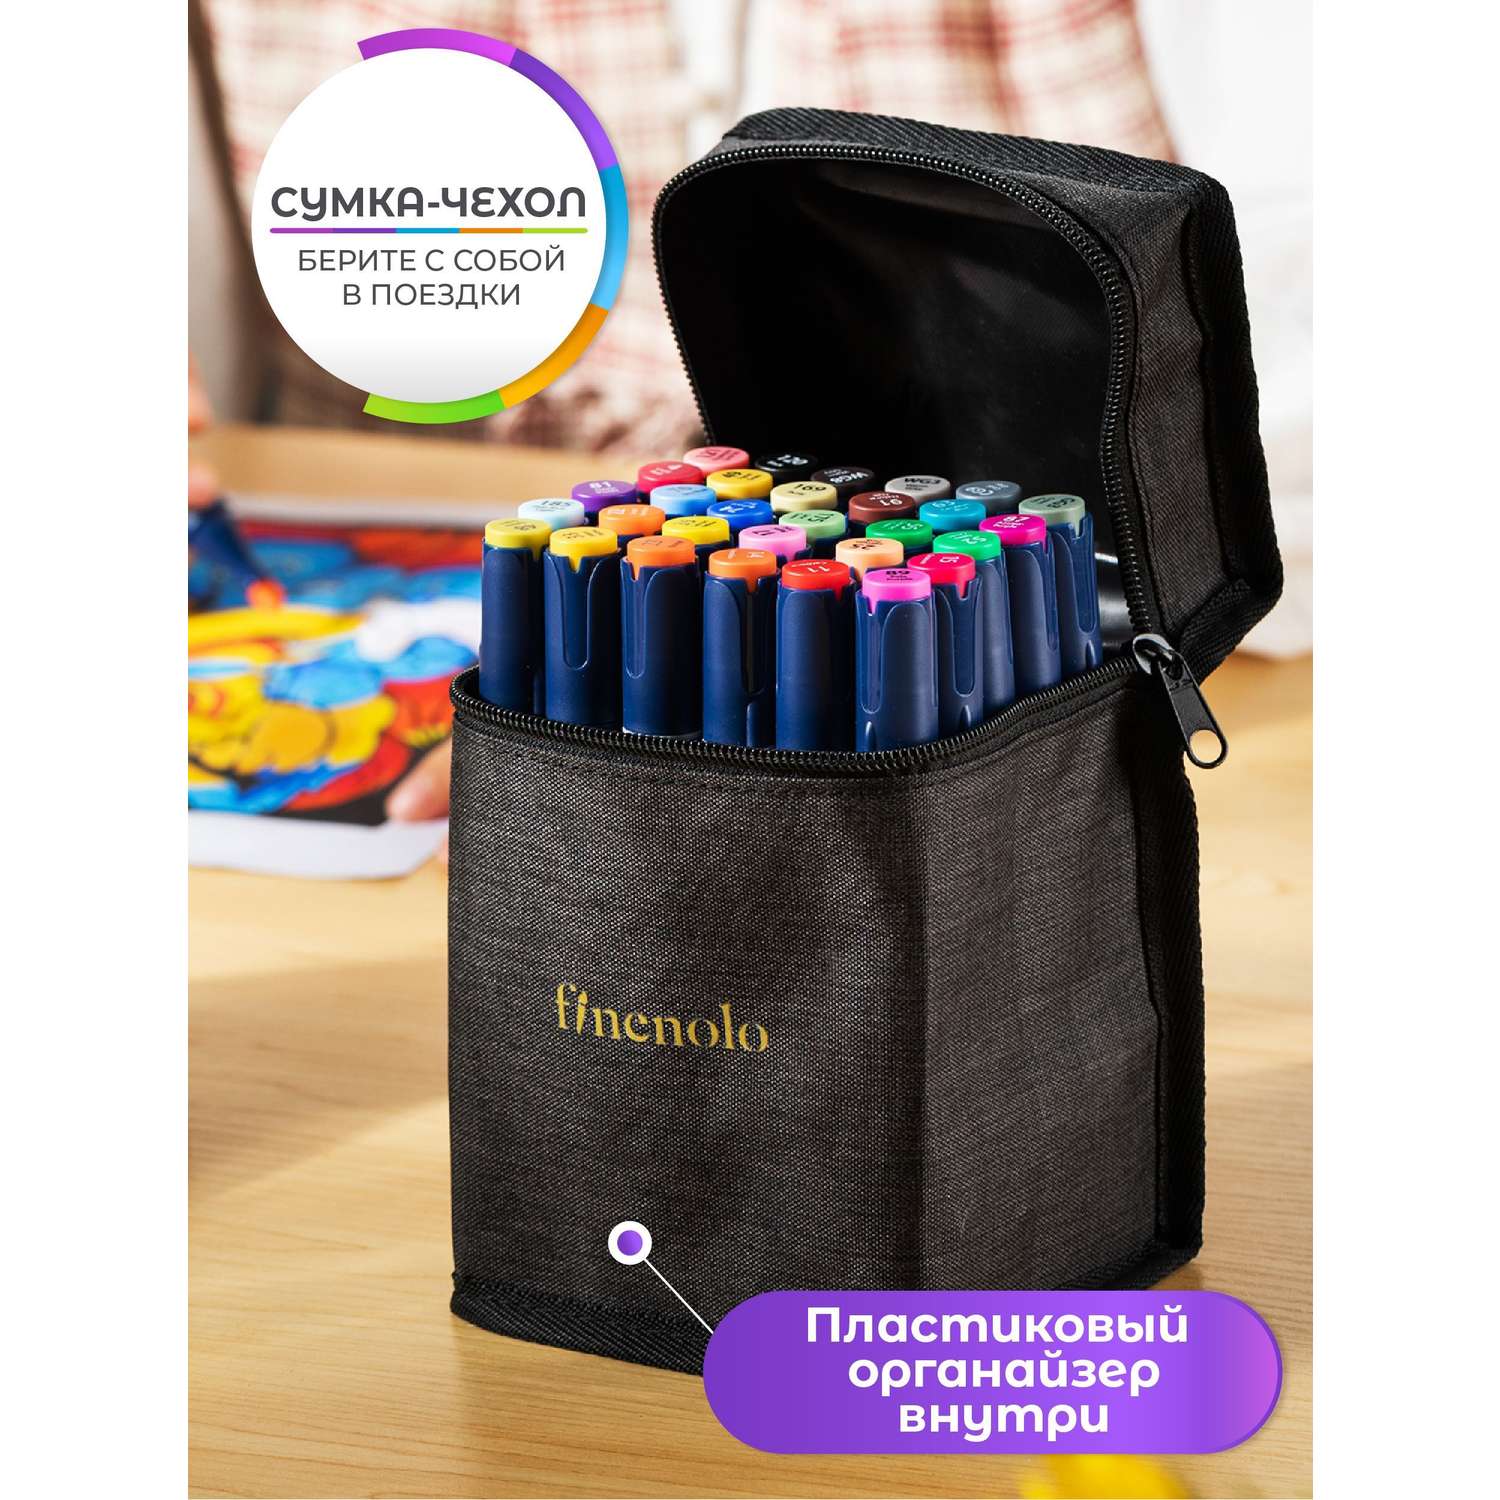 Набор спиртовых маркеров Finenolo 2 пера:кисть+долото 60 цветов в сумке-пенале - фото 4